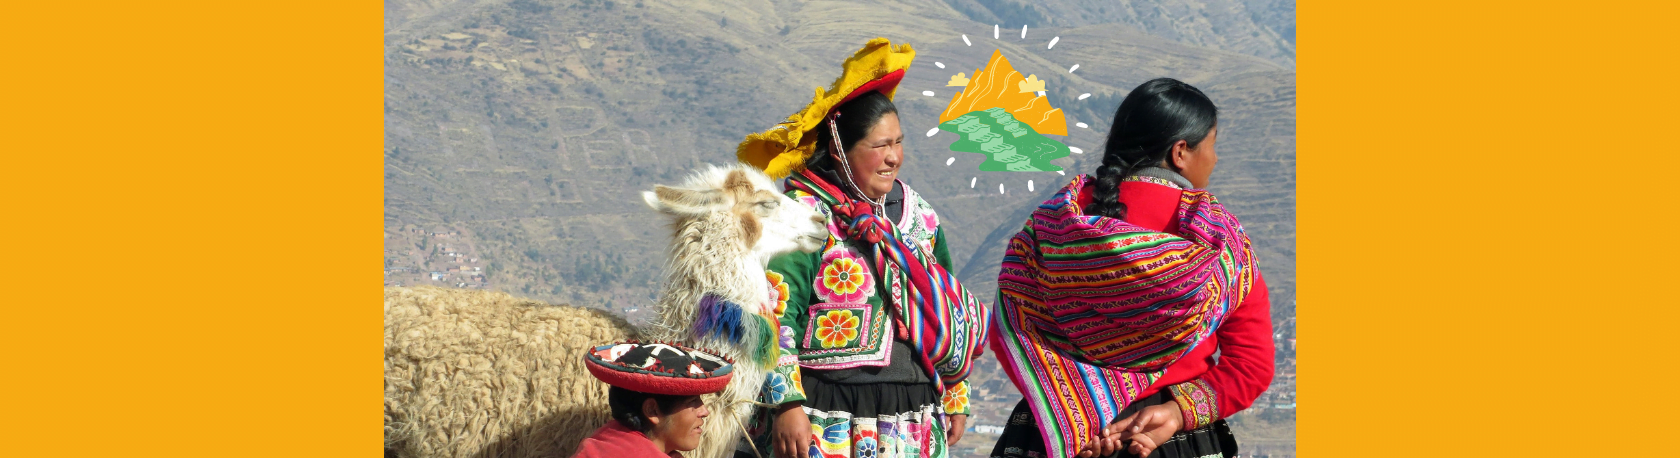 ¿Sabías que en los Andes se suele ofrecer un trago a la Pachamama? - Easy Español